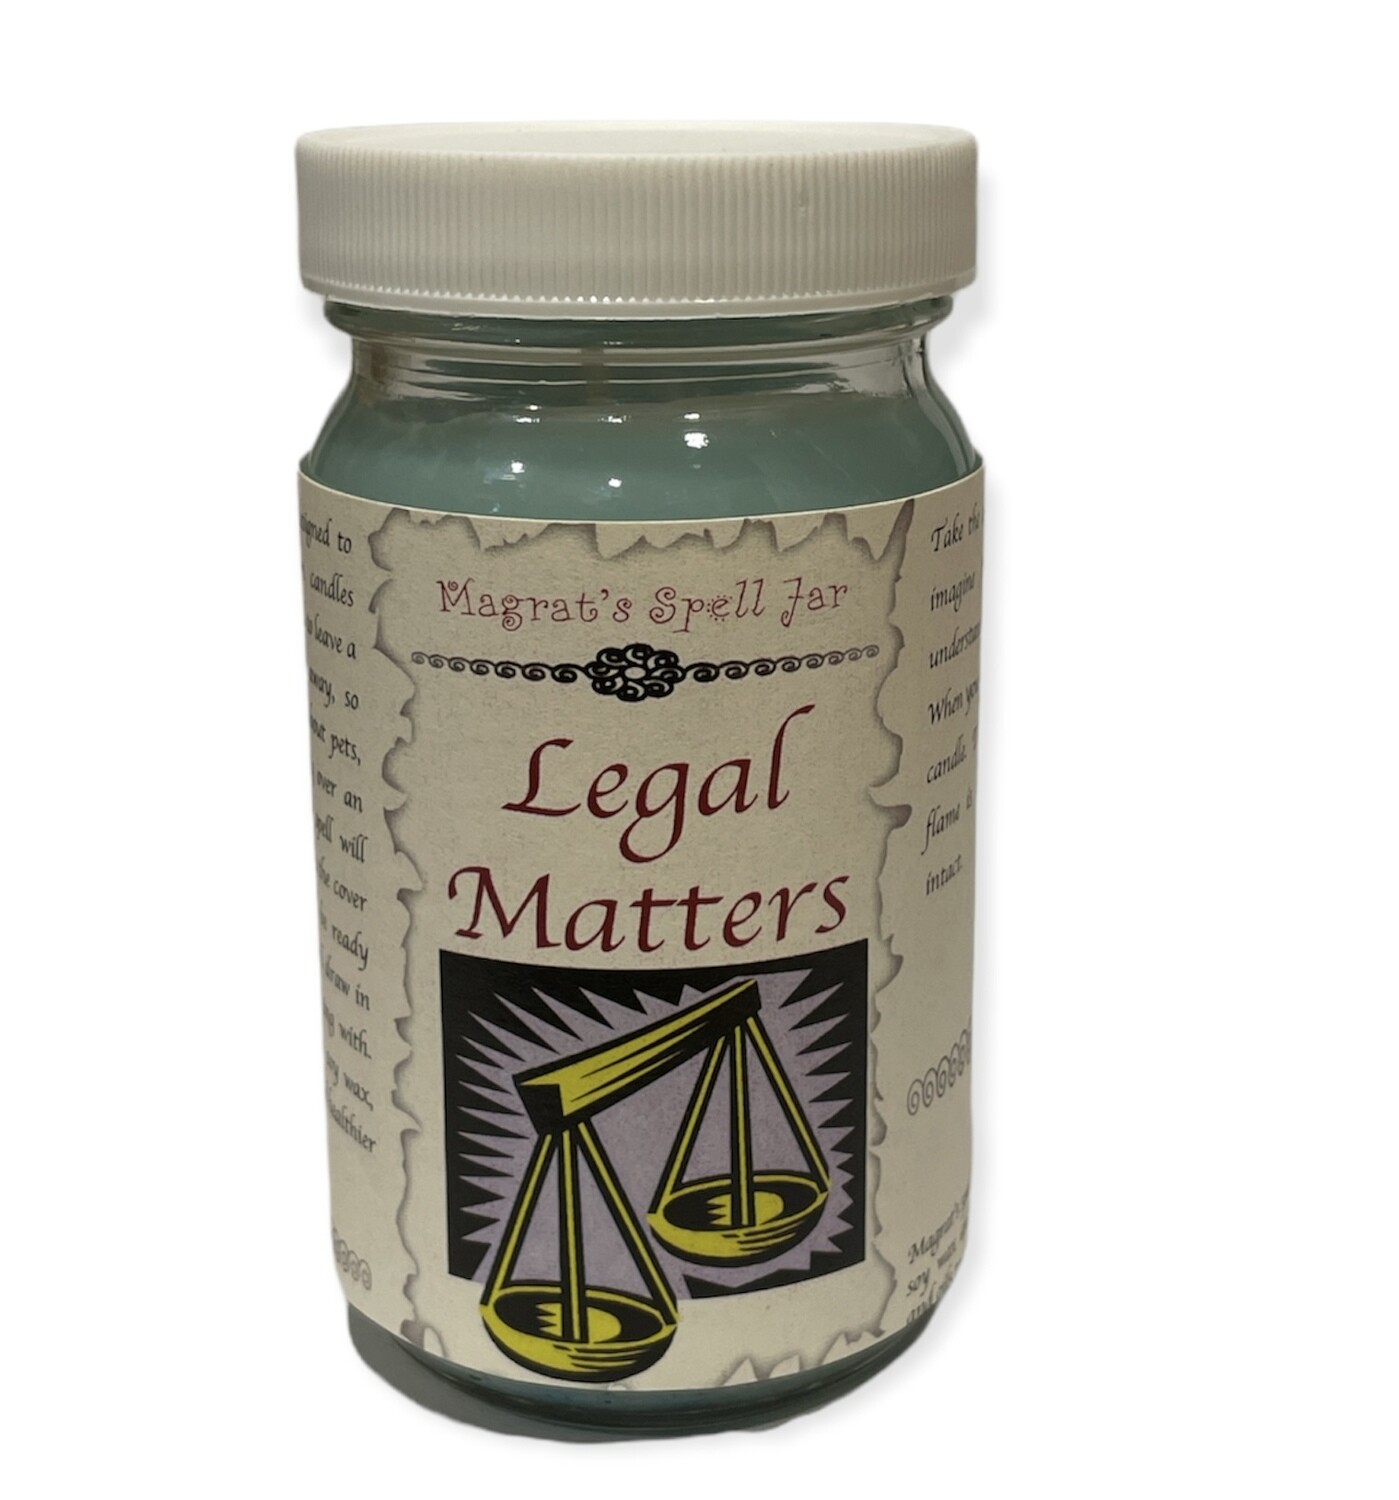 Legal Matters Magrat Spell Jar